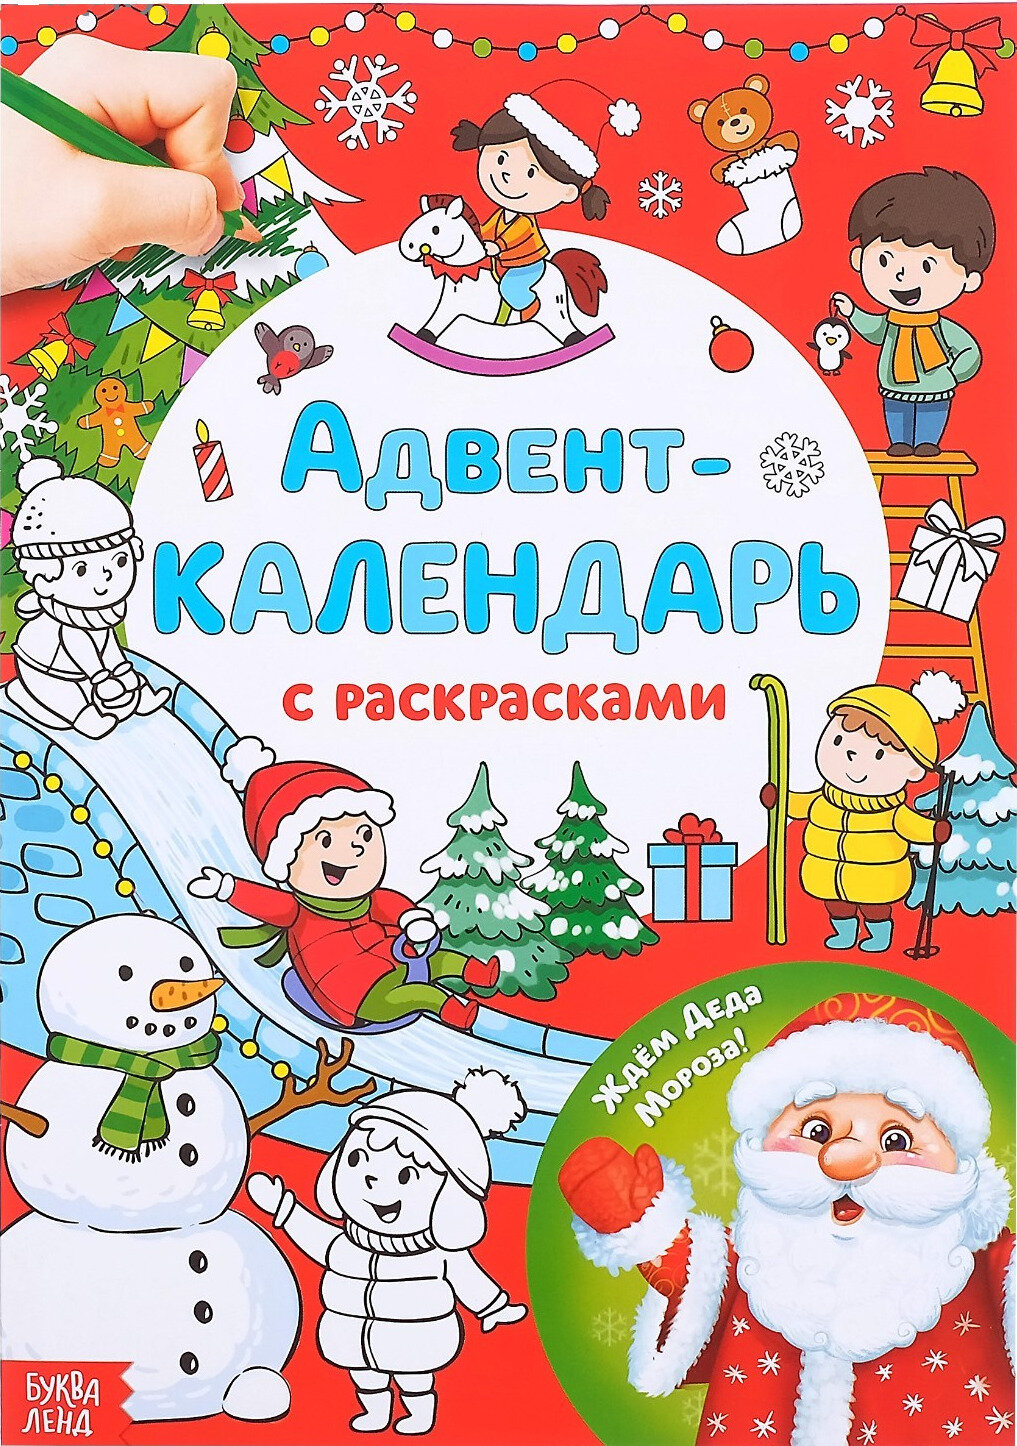 Адвент-календарь с детскими раскрасками "Ждём Деда Мороза", развитие творческих способностей и логического мышления, формат А4, 16 стр.